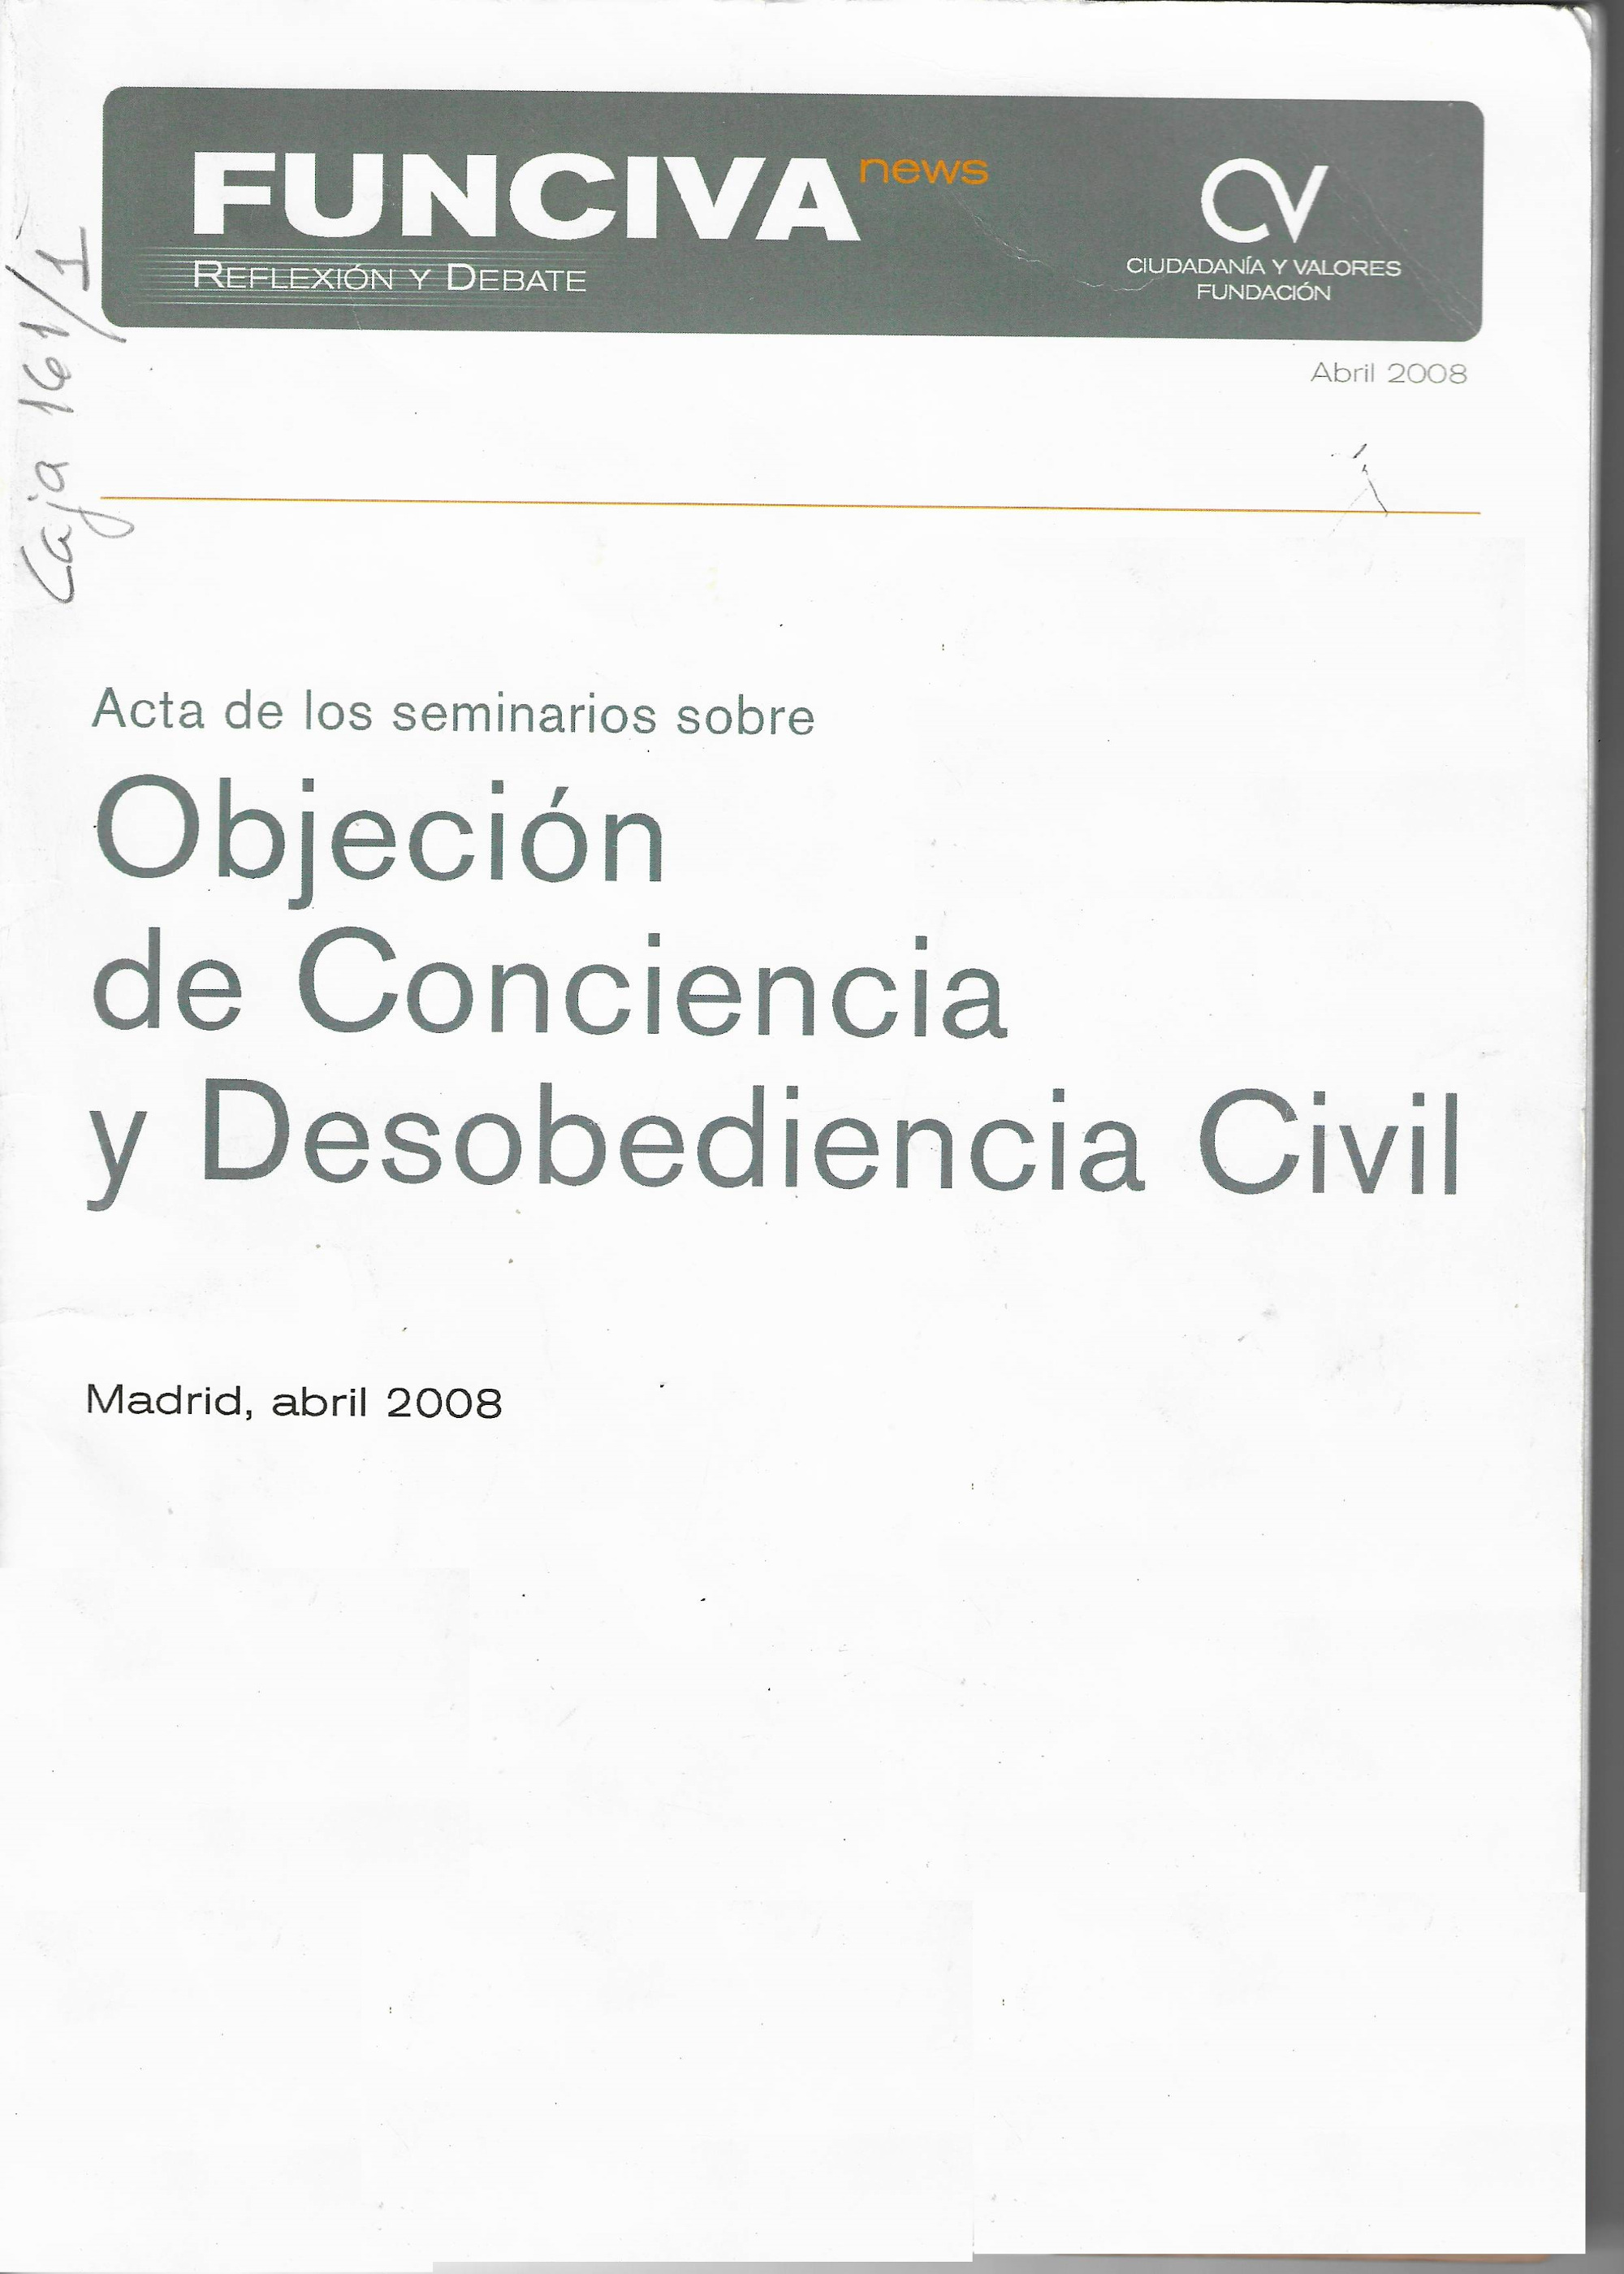 Imagen de portada del libro Acta de los seminarios sobre objeción de conciencia y desobediencia civil